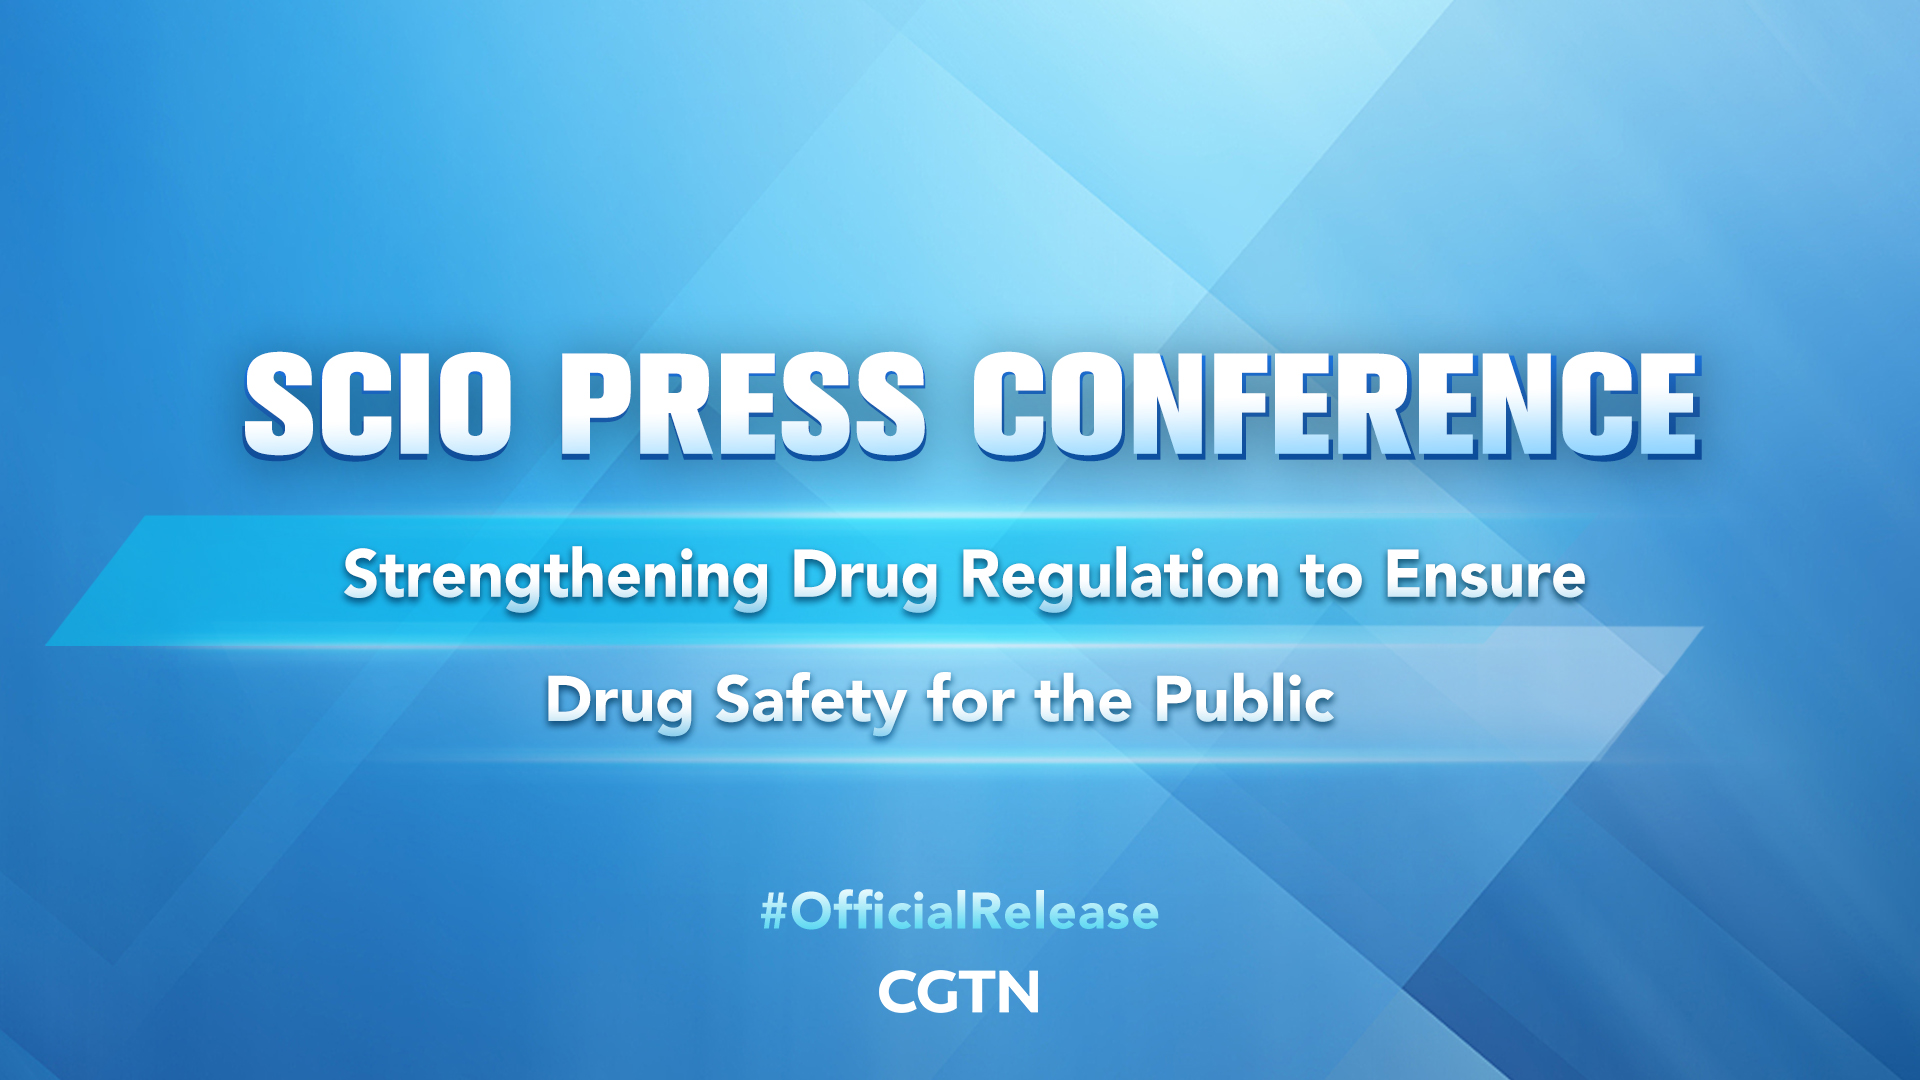 Live: Press conference on strengthening drug regulation to ensure drug safety for the public